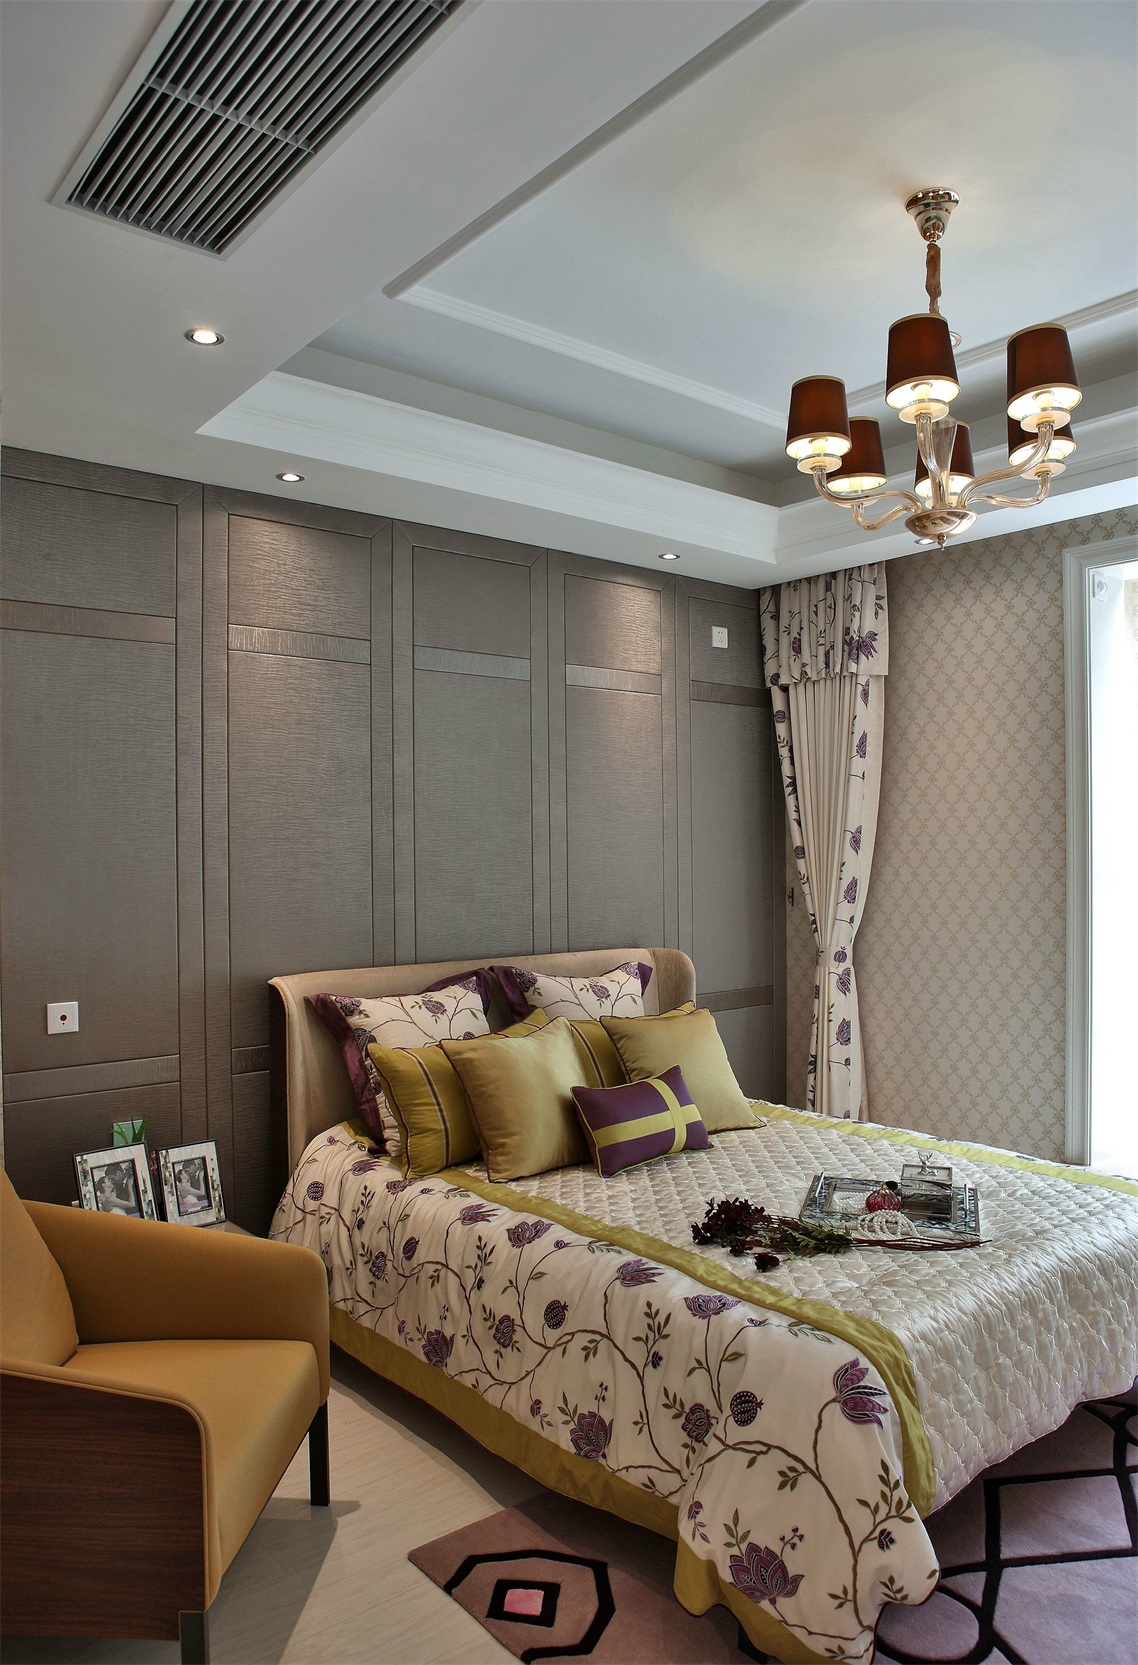 灰色饰面板搭配暖色床品，让次卧空间清新自然，营造出温馨舒适的卧室氛围。